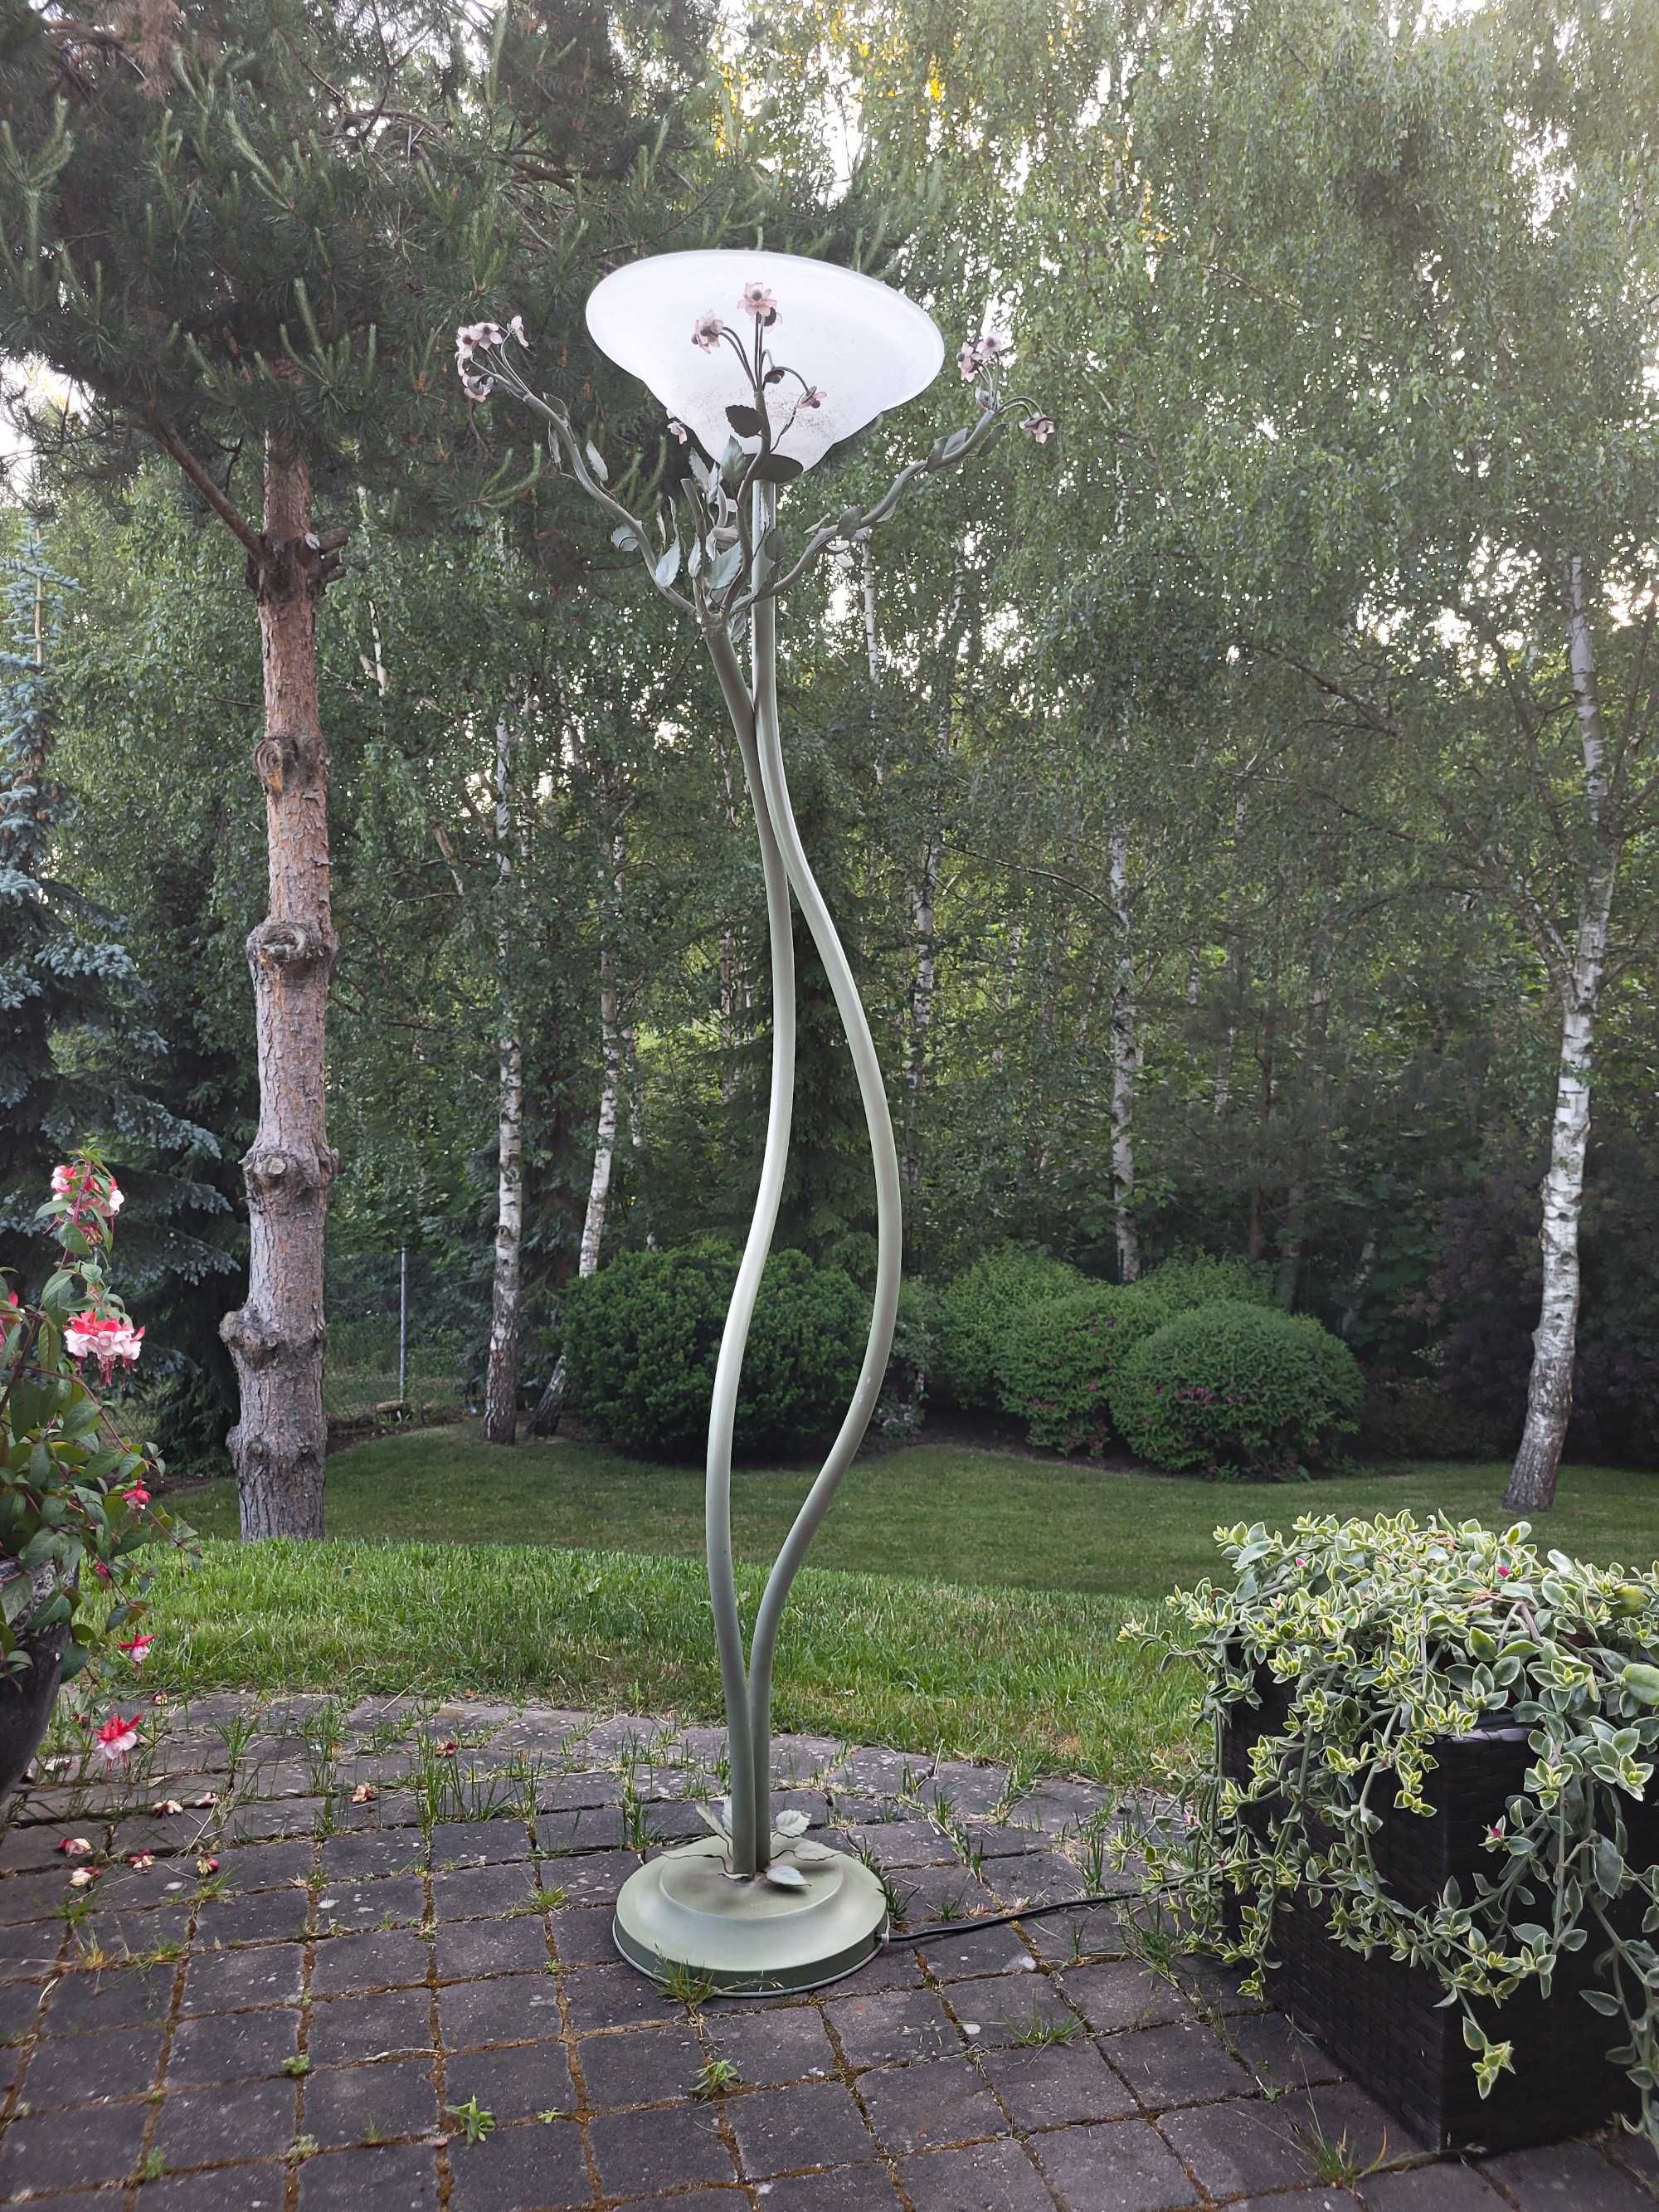 Lampa stojąca stylizowana na pnącze kwiatowe